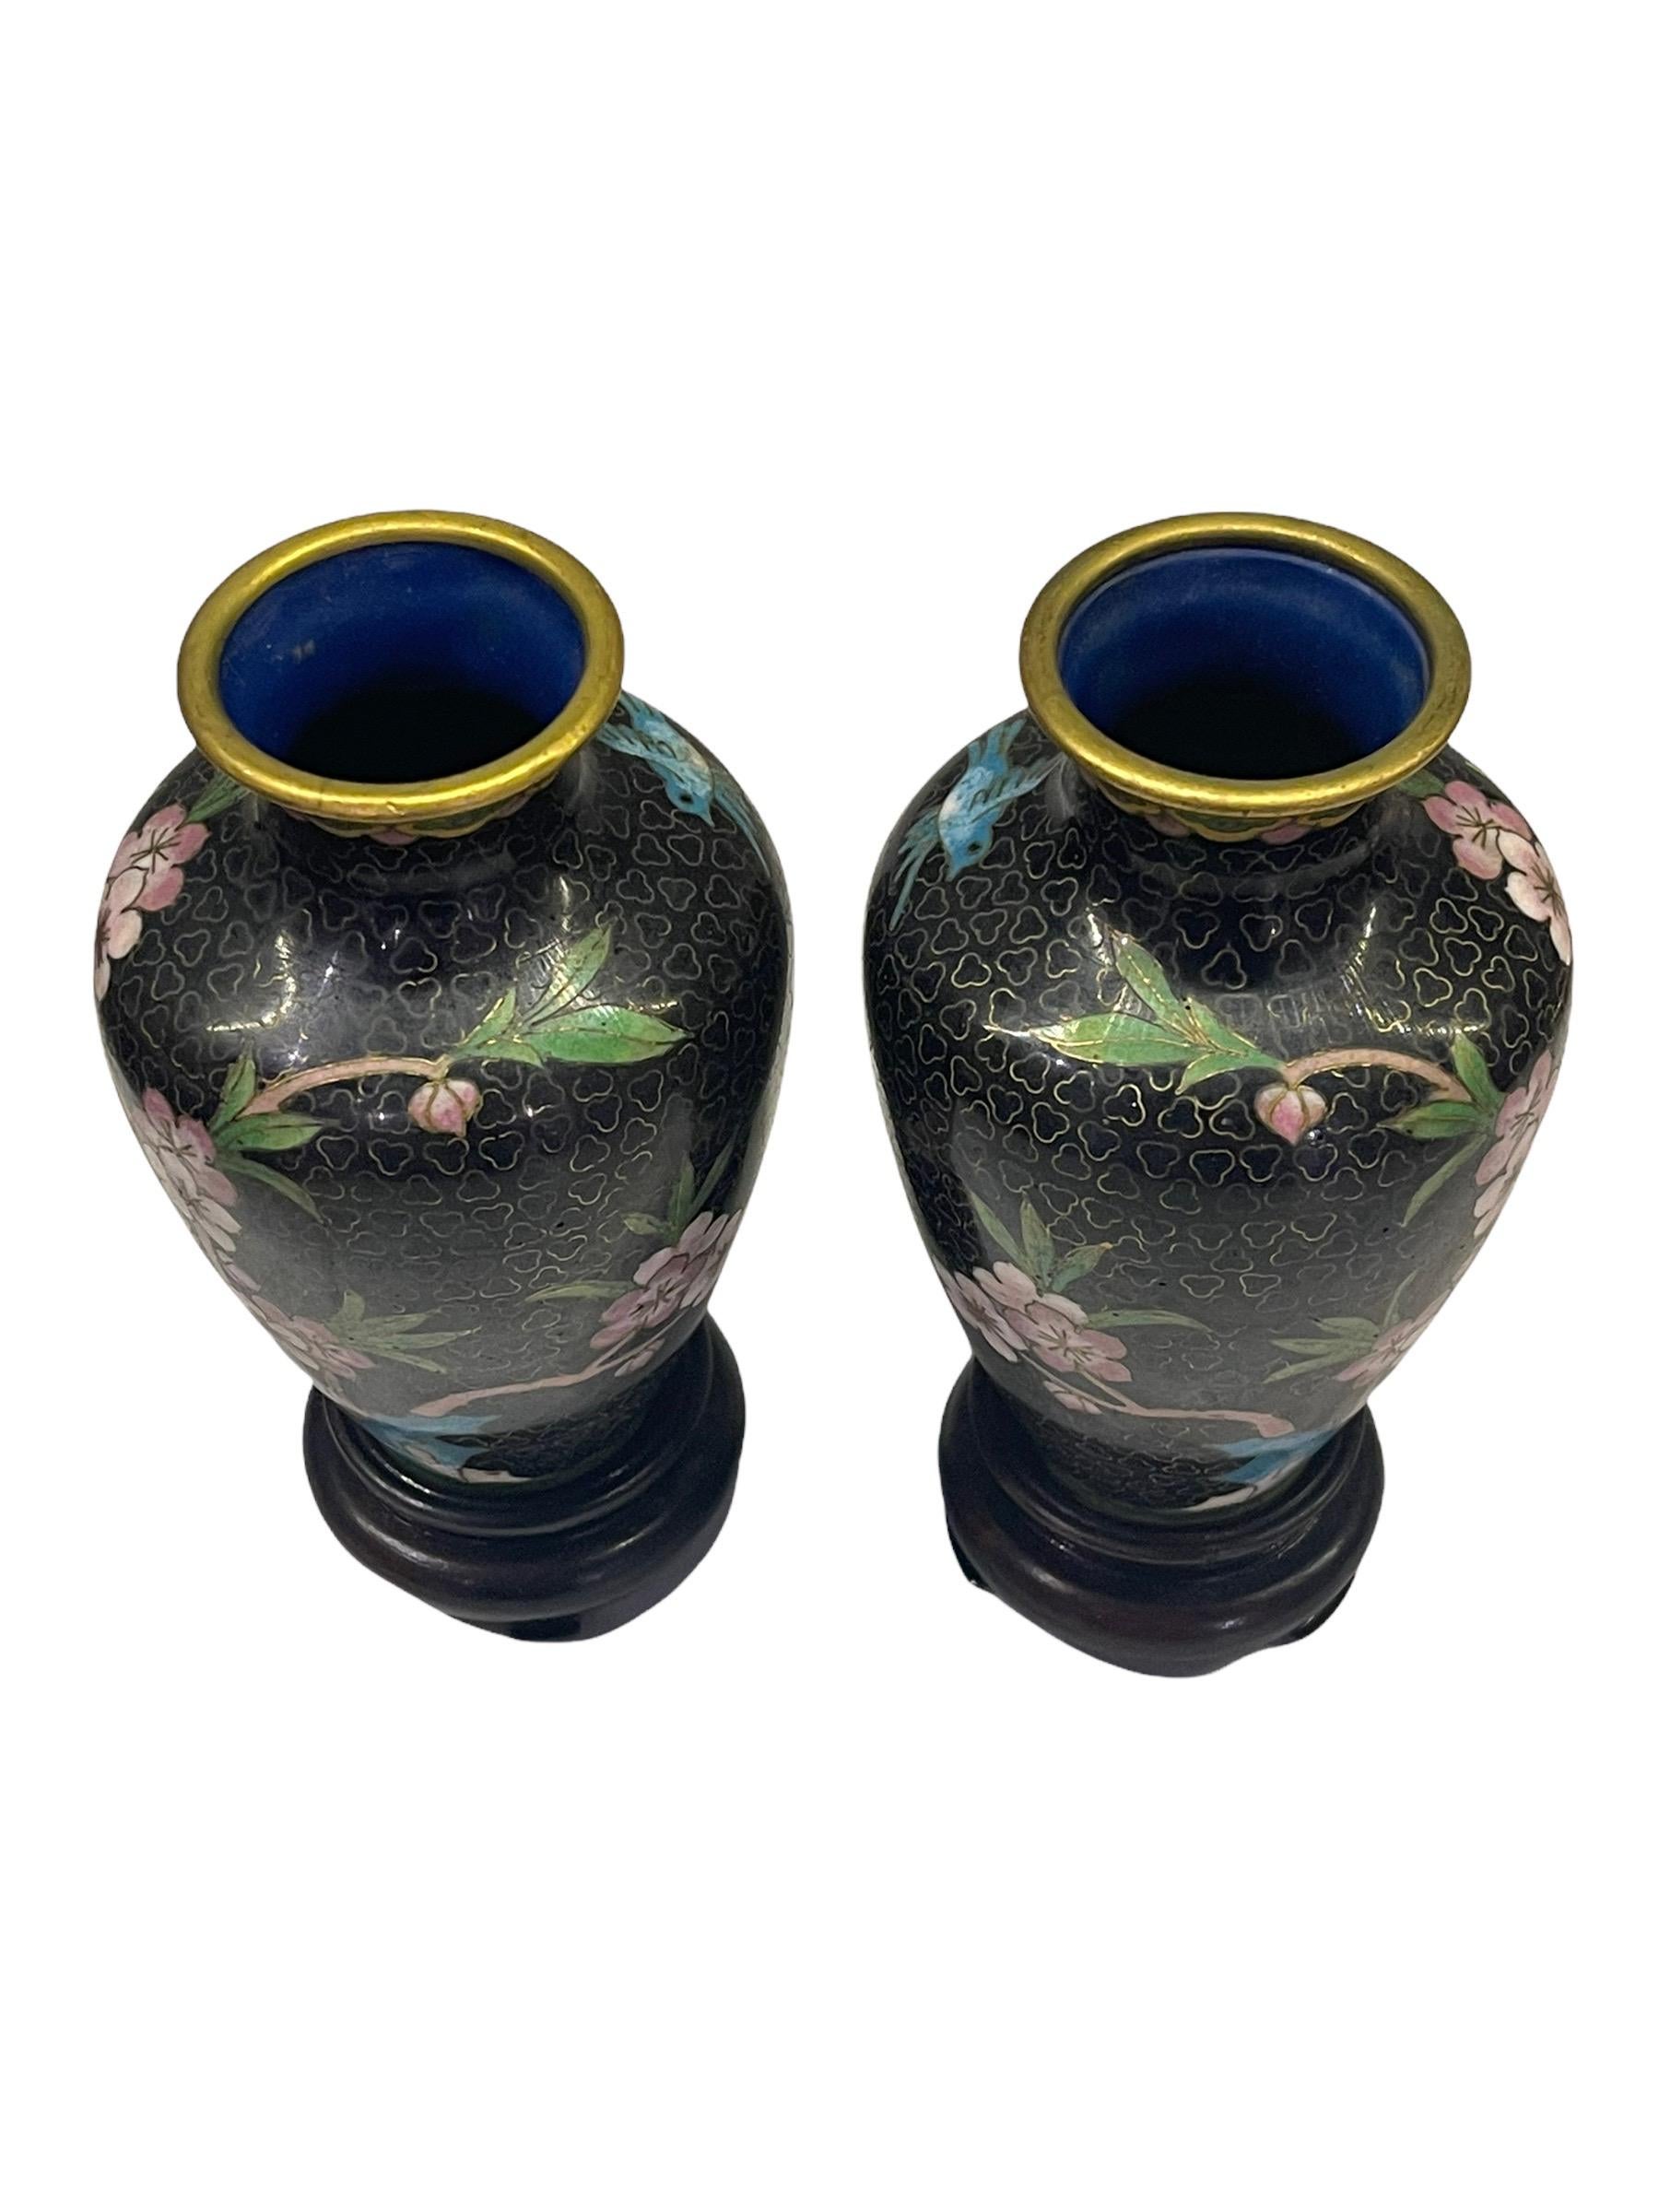 Ein Paar chinesische Urnenvasen aus dem frühen 20. Jahrhundert (Republikzeit), die im traditionellen Cloisonné-Verfahren hergestellt wurden. Die Miniaturvasen haben Metallformen aus Messing mit einer klassischen Balusterform. Die Oberfläche wurde